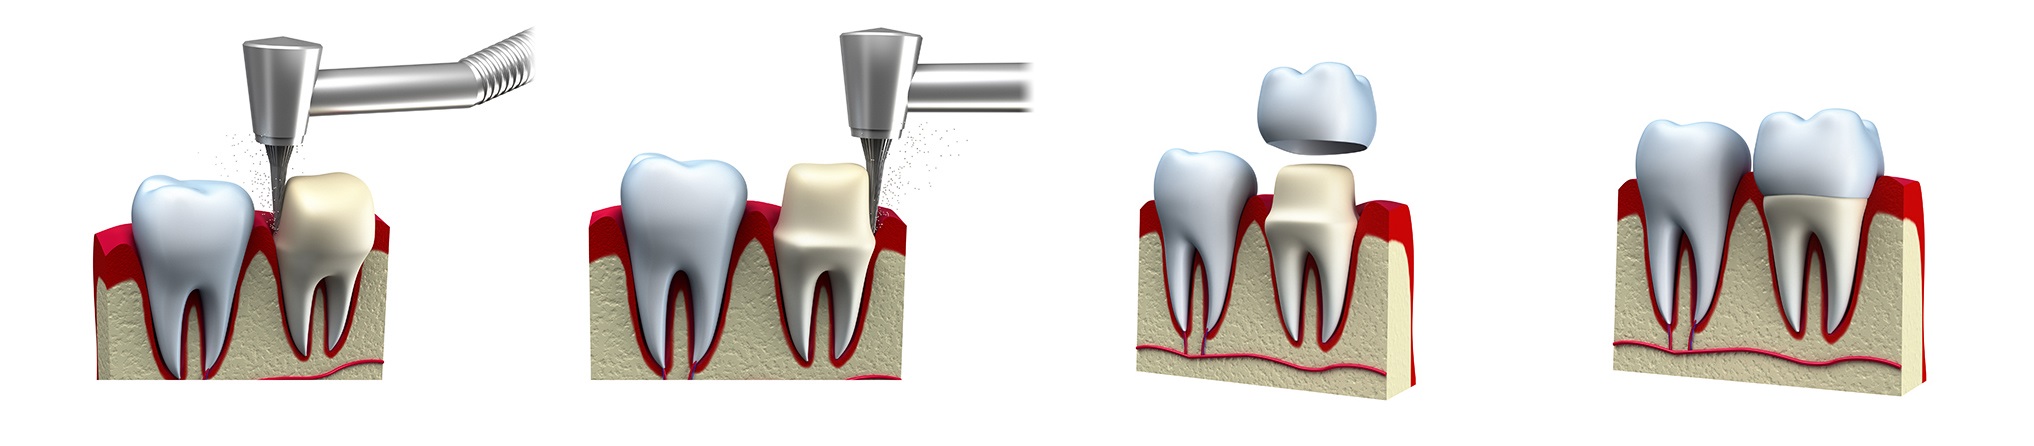 Процесс установки коронки на жевательный зуб